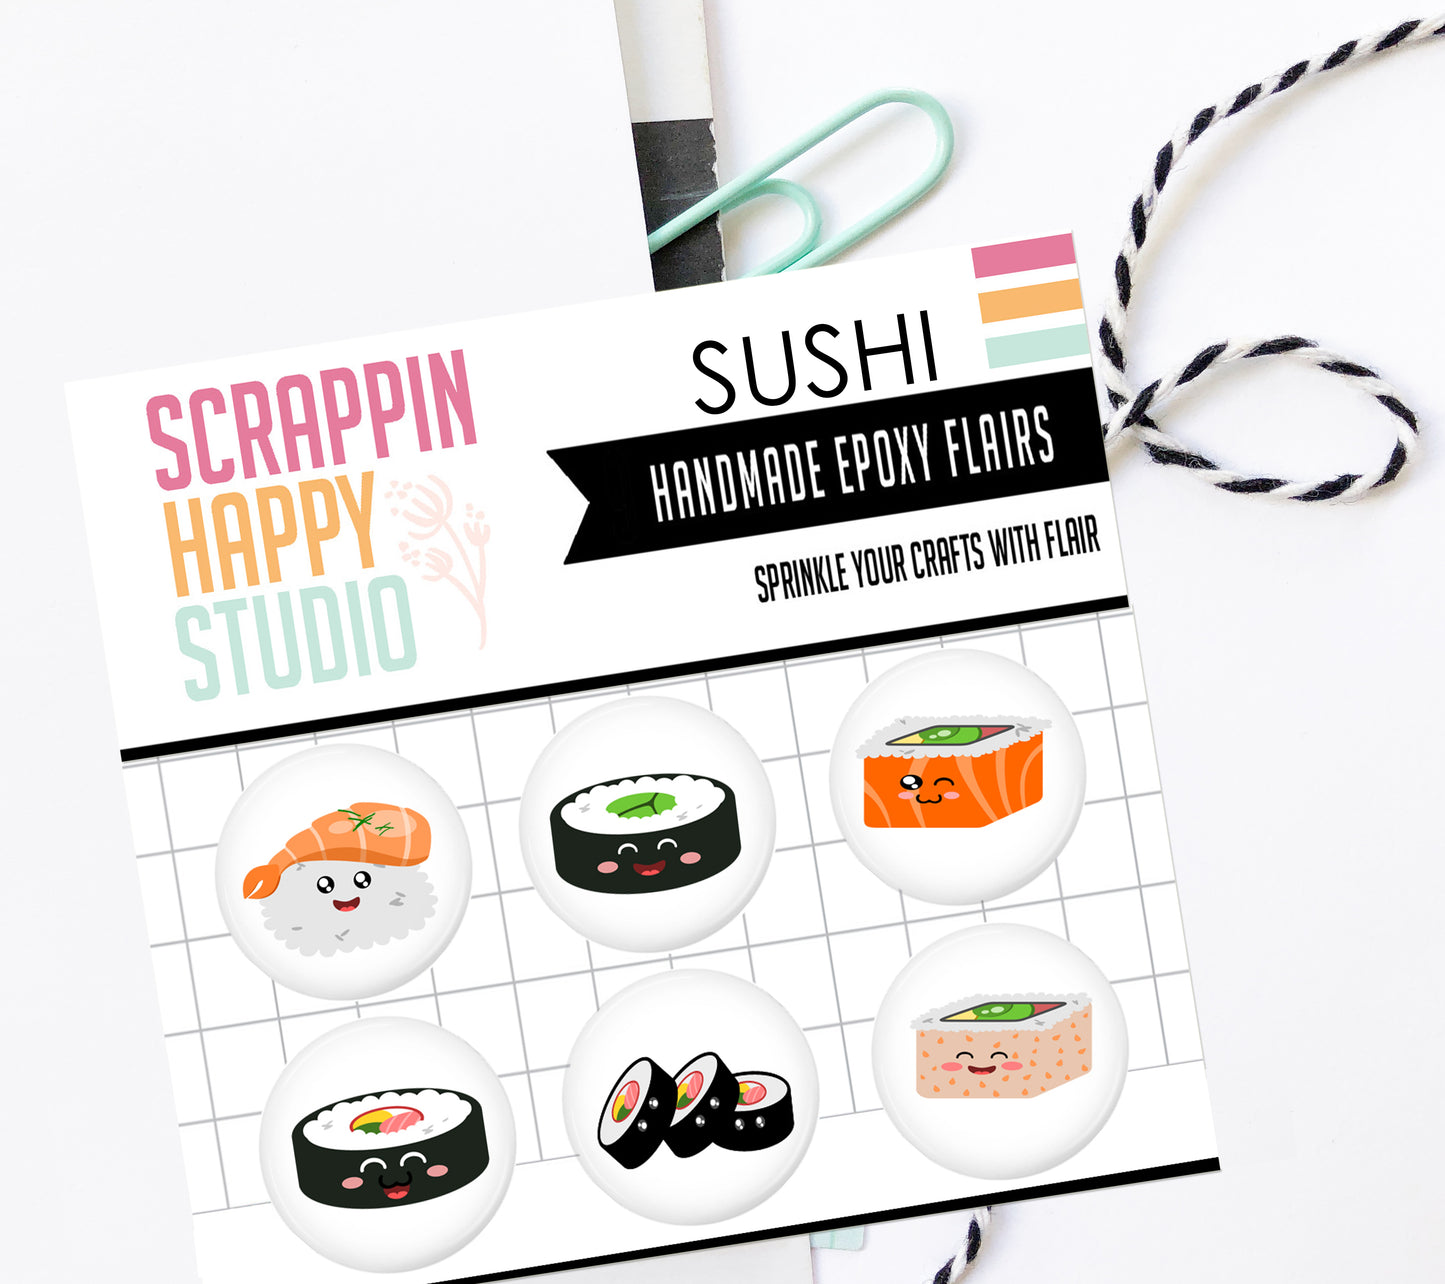 Sushi Epoxy Flair